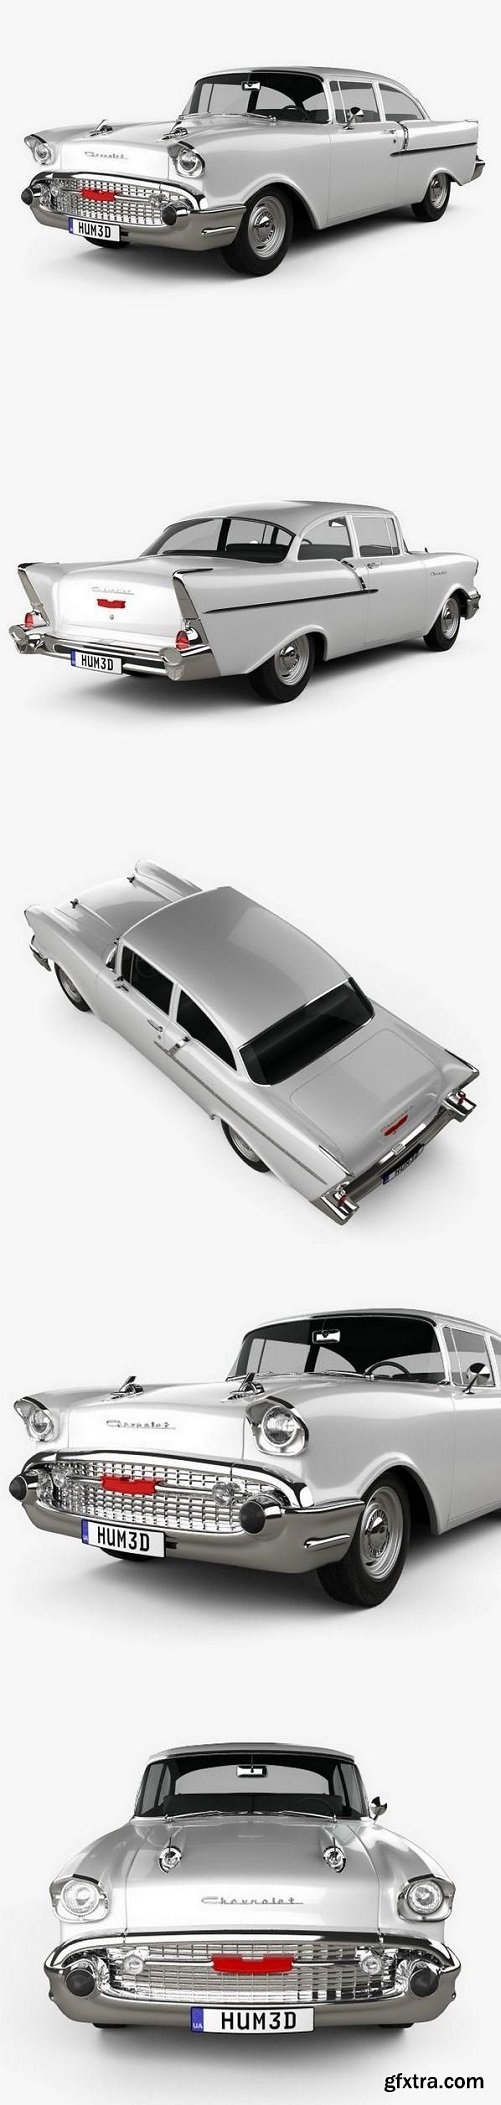 Chevrolet 150 sedan 1957 3D model